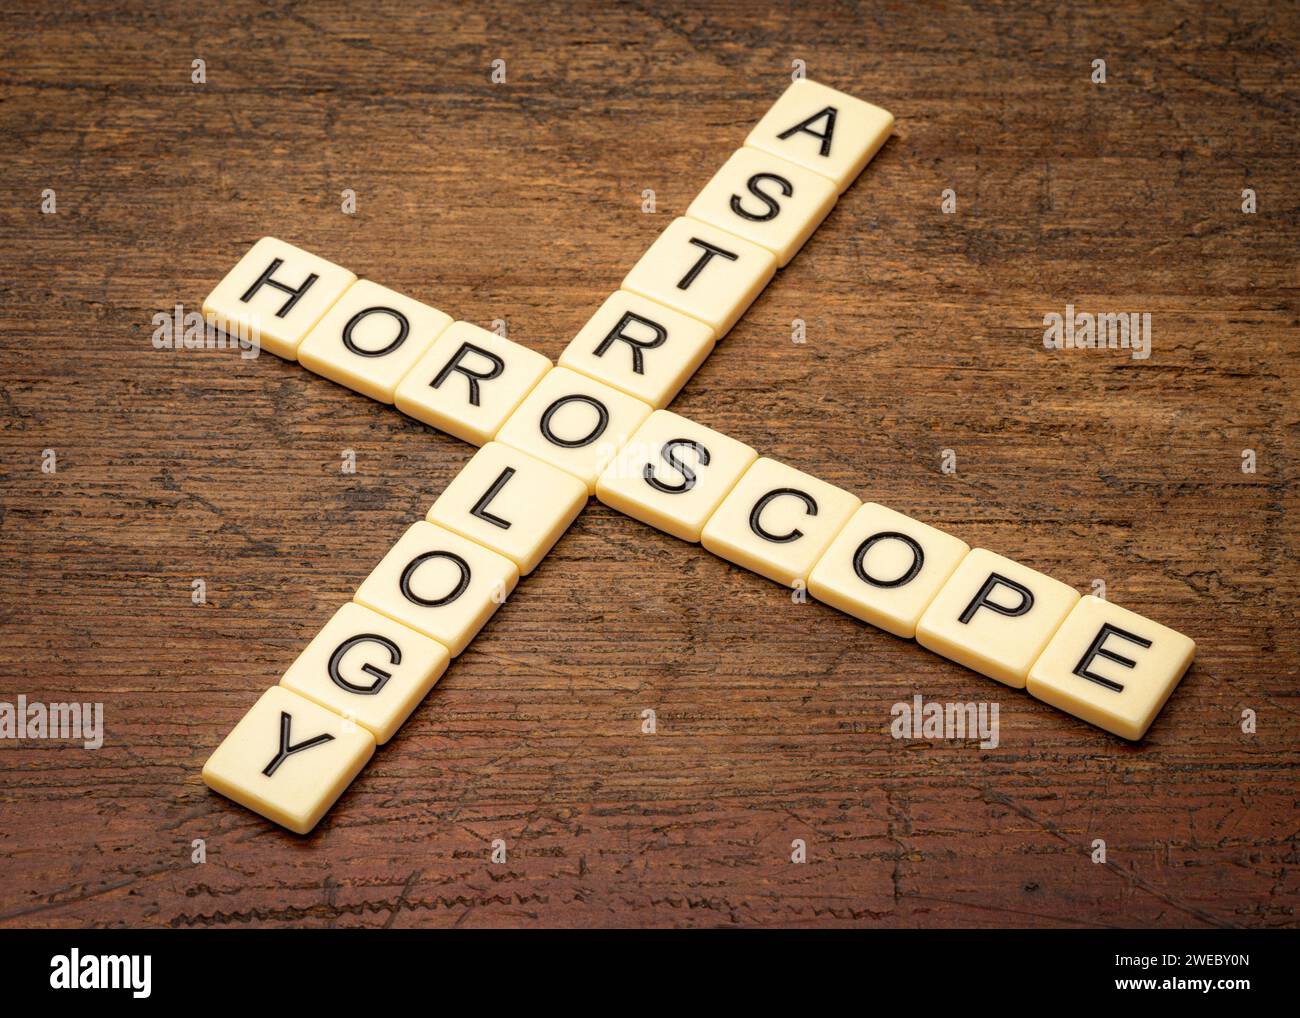 Astrologie und Horoskop-Kreuzworträtsel in Elfenbeinbuchstaben-Fliesen gegen rustikales verwittertes Holz Stockfoto